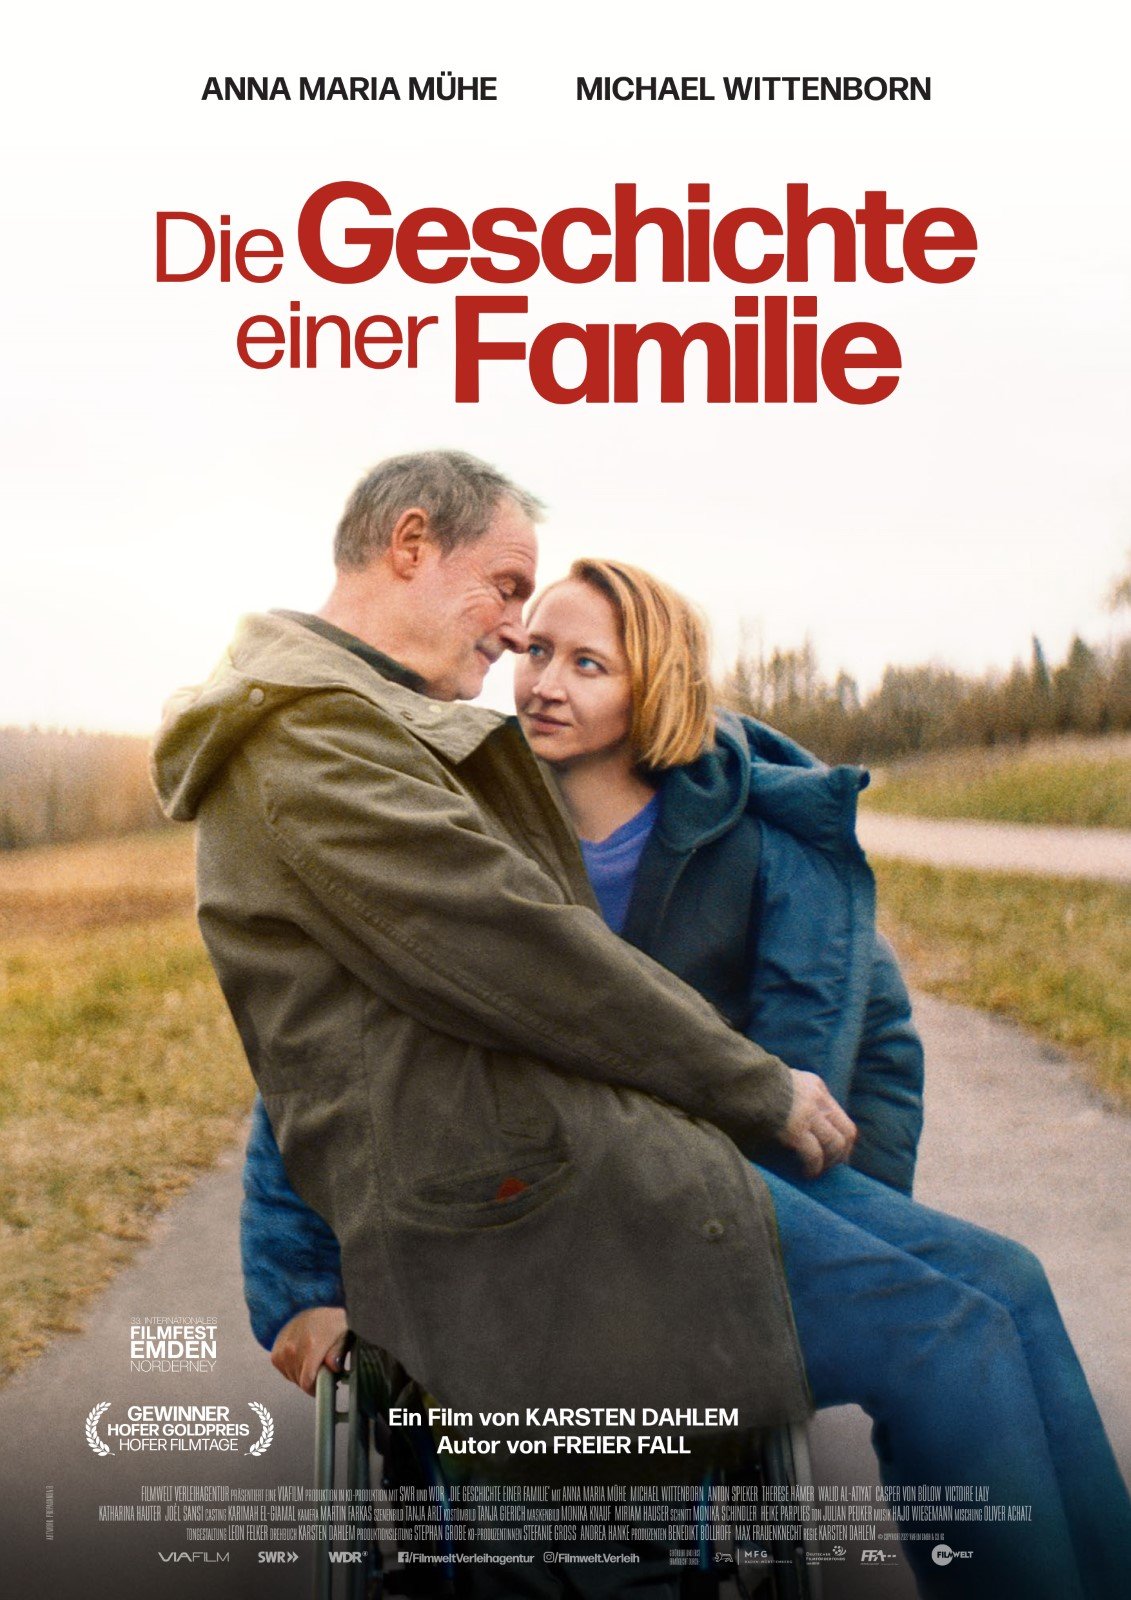 kinoprogramm-f-r-die-geschichte-einer-familie-in-erfurt-filmstarts-de